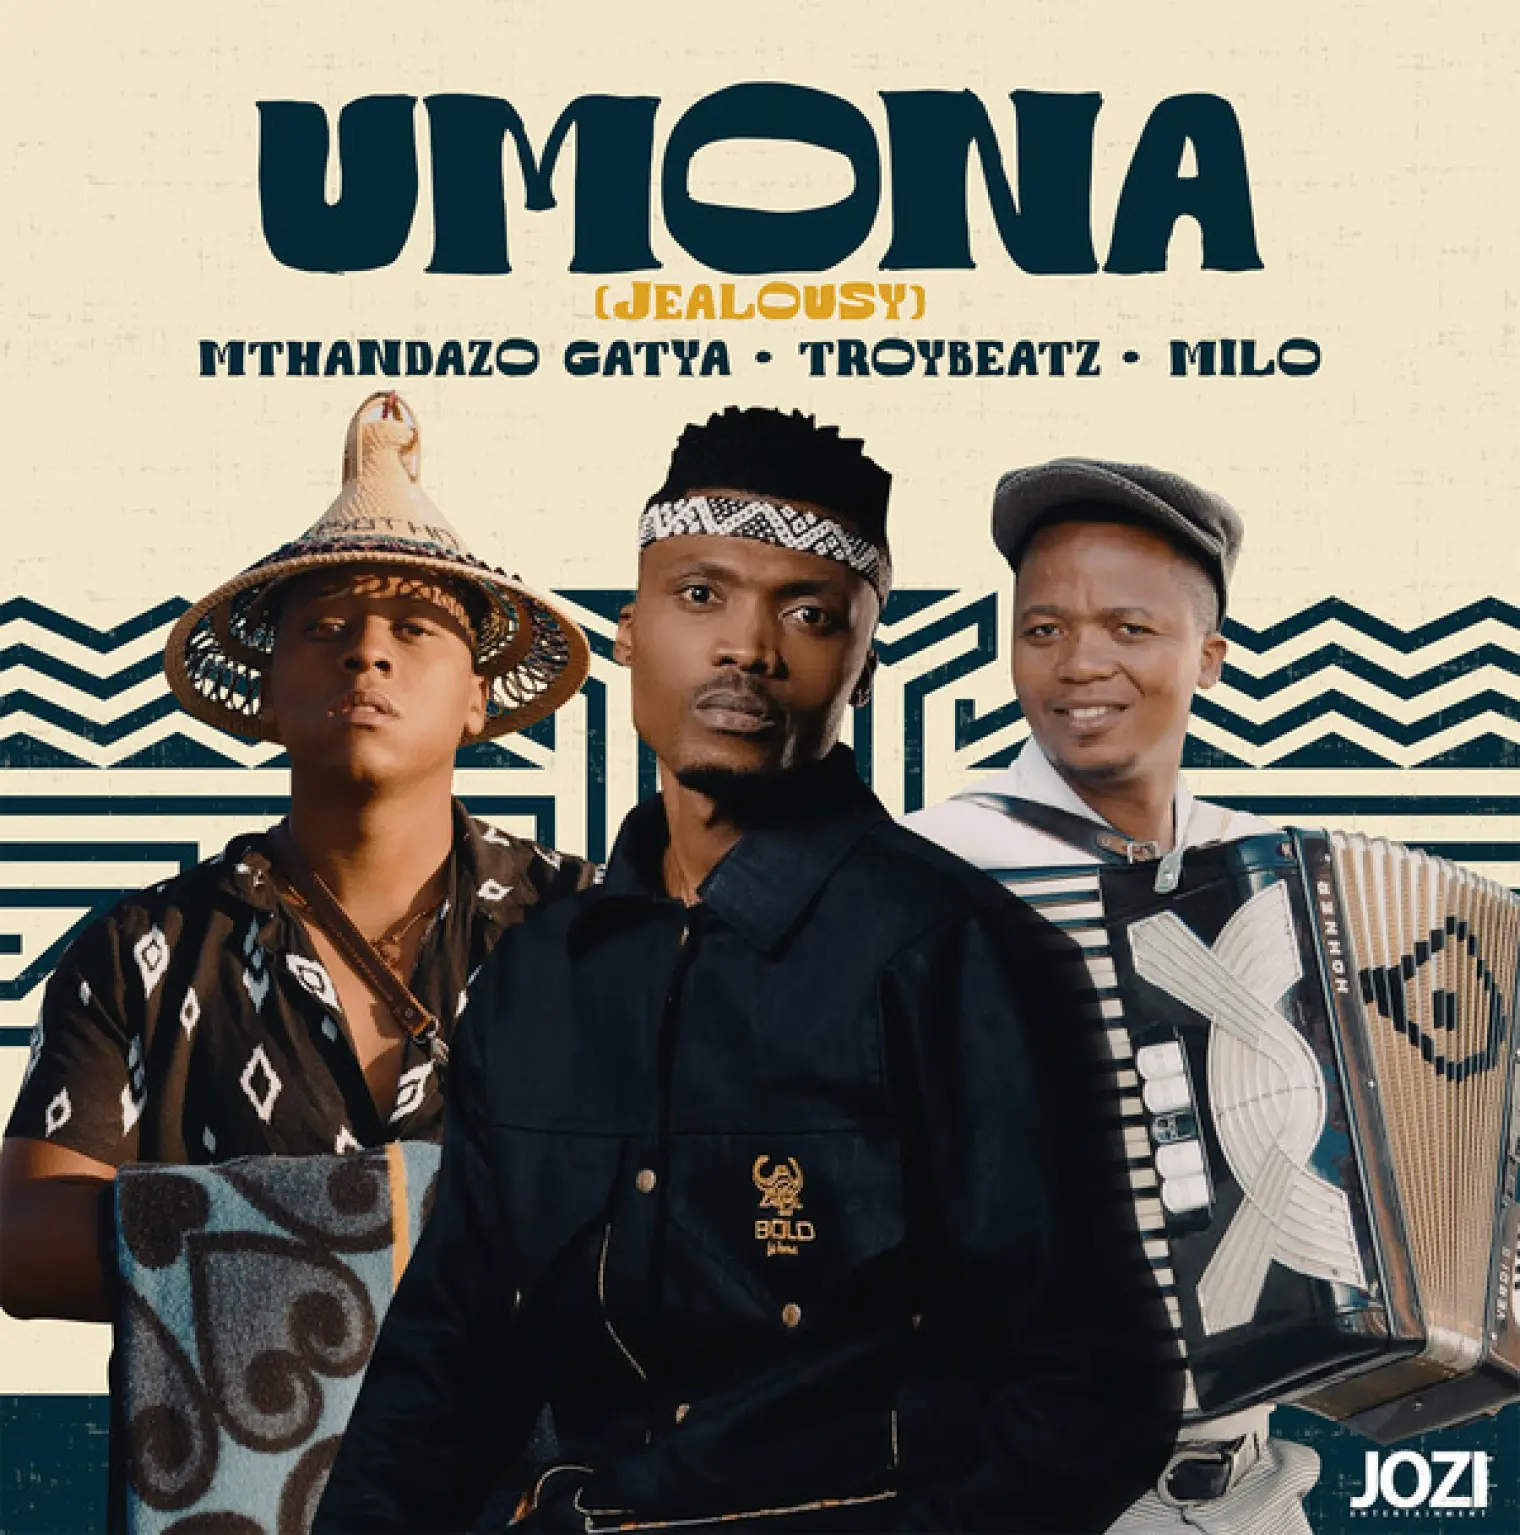 Umona (Jealousy) -  Mthandazo Gatya 